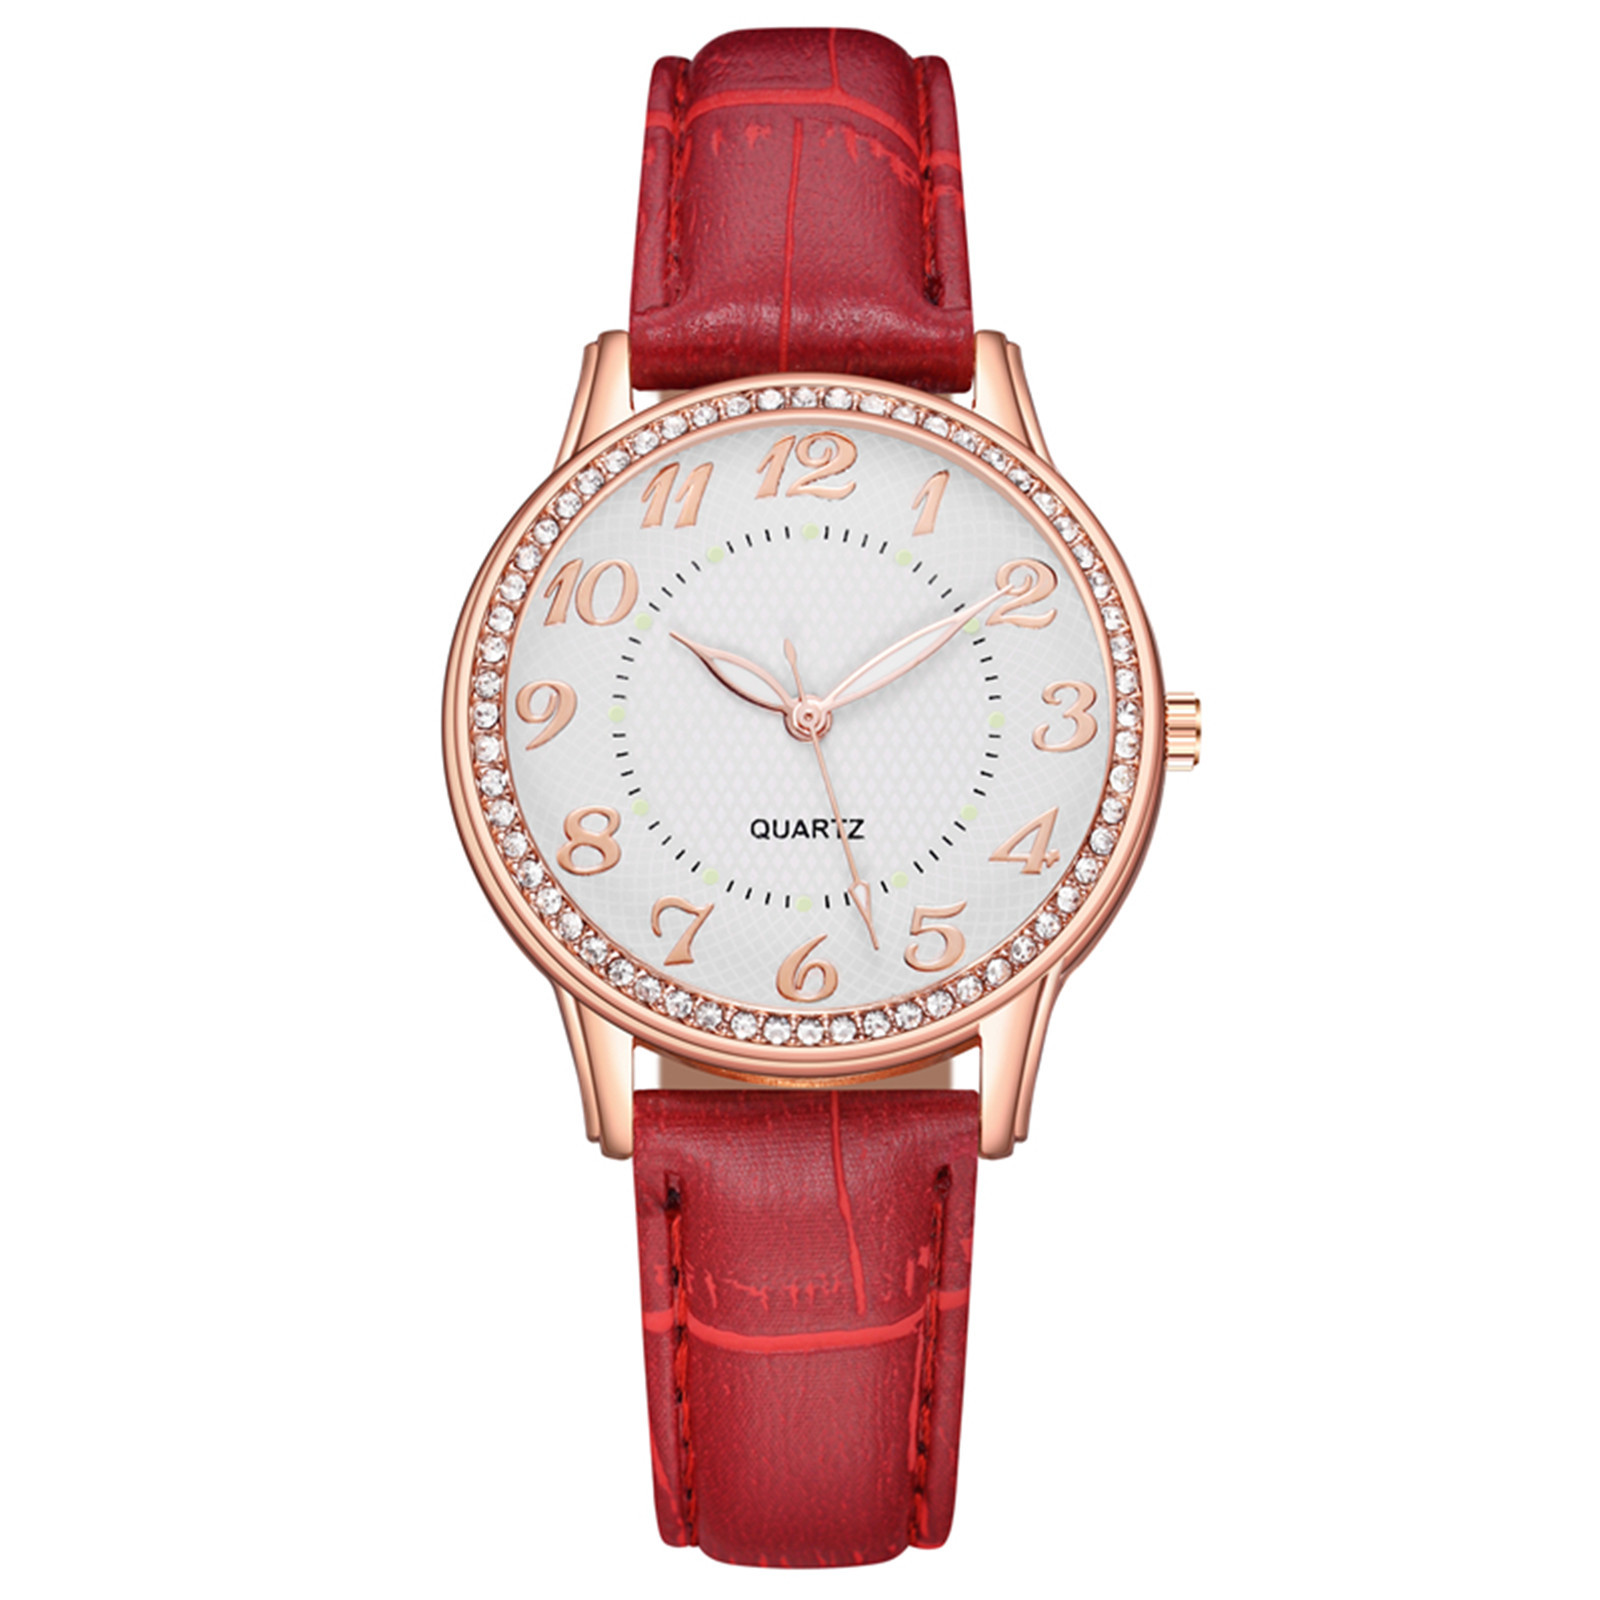 amousa Watch Ladies Diamond Luxury Watch Fashion Belt Watch - image 2 of 3